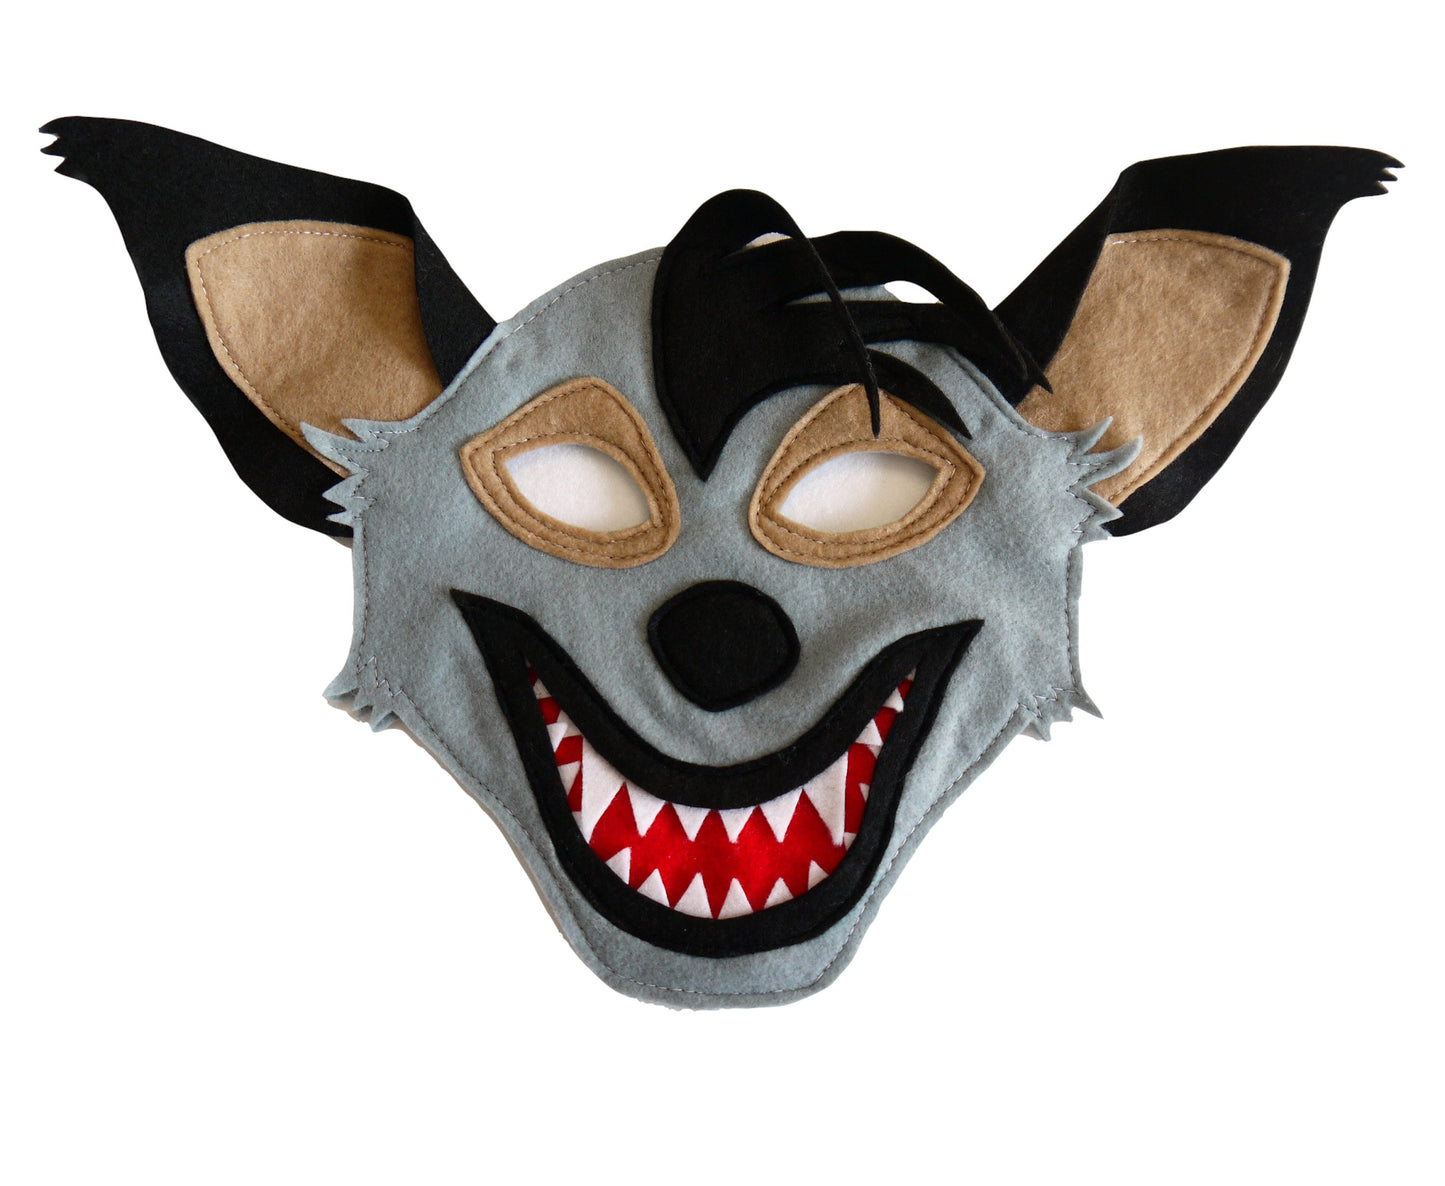 Hyena costume mask, world book day costume, kids or adults size Banzai, Shenzi and Ed felt fabric, theatre production, dress up gift